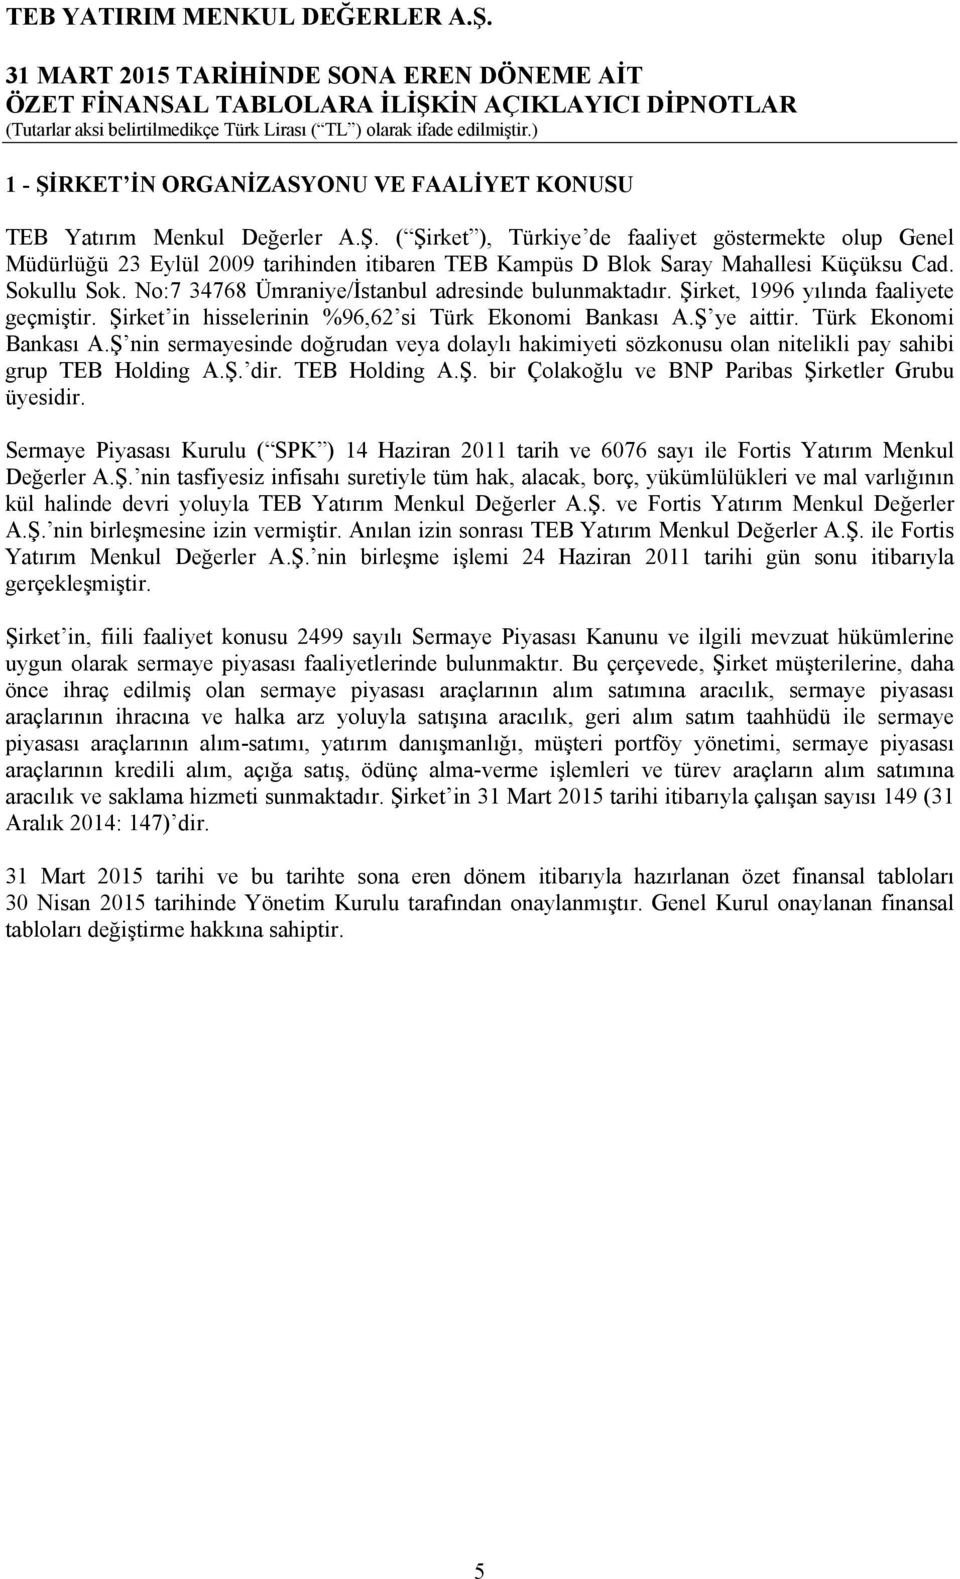 Türk Ekonomi Bankası A.Ş nin sermayesinde doğrudan veya dolaylı hakimiyeti sözkonusu olan nitelikli pay sahibi grup TEB Holding A.Ş. dir. TEB Holding A.Ş. bir Çolakoğlu ve BNP Paribas Şirketler Grubu üyesidir.